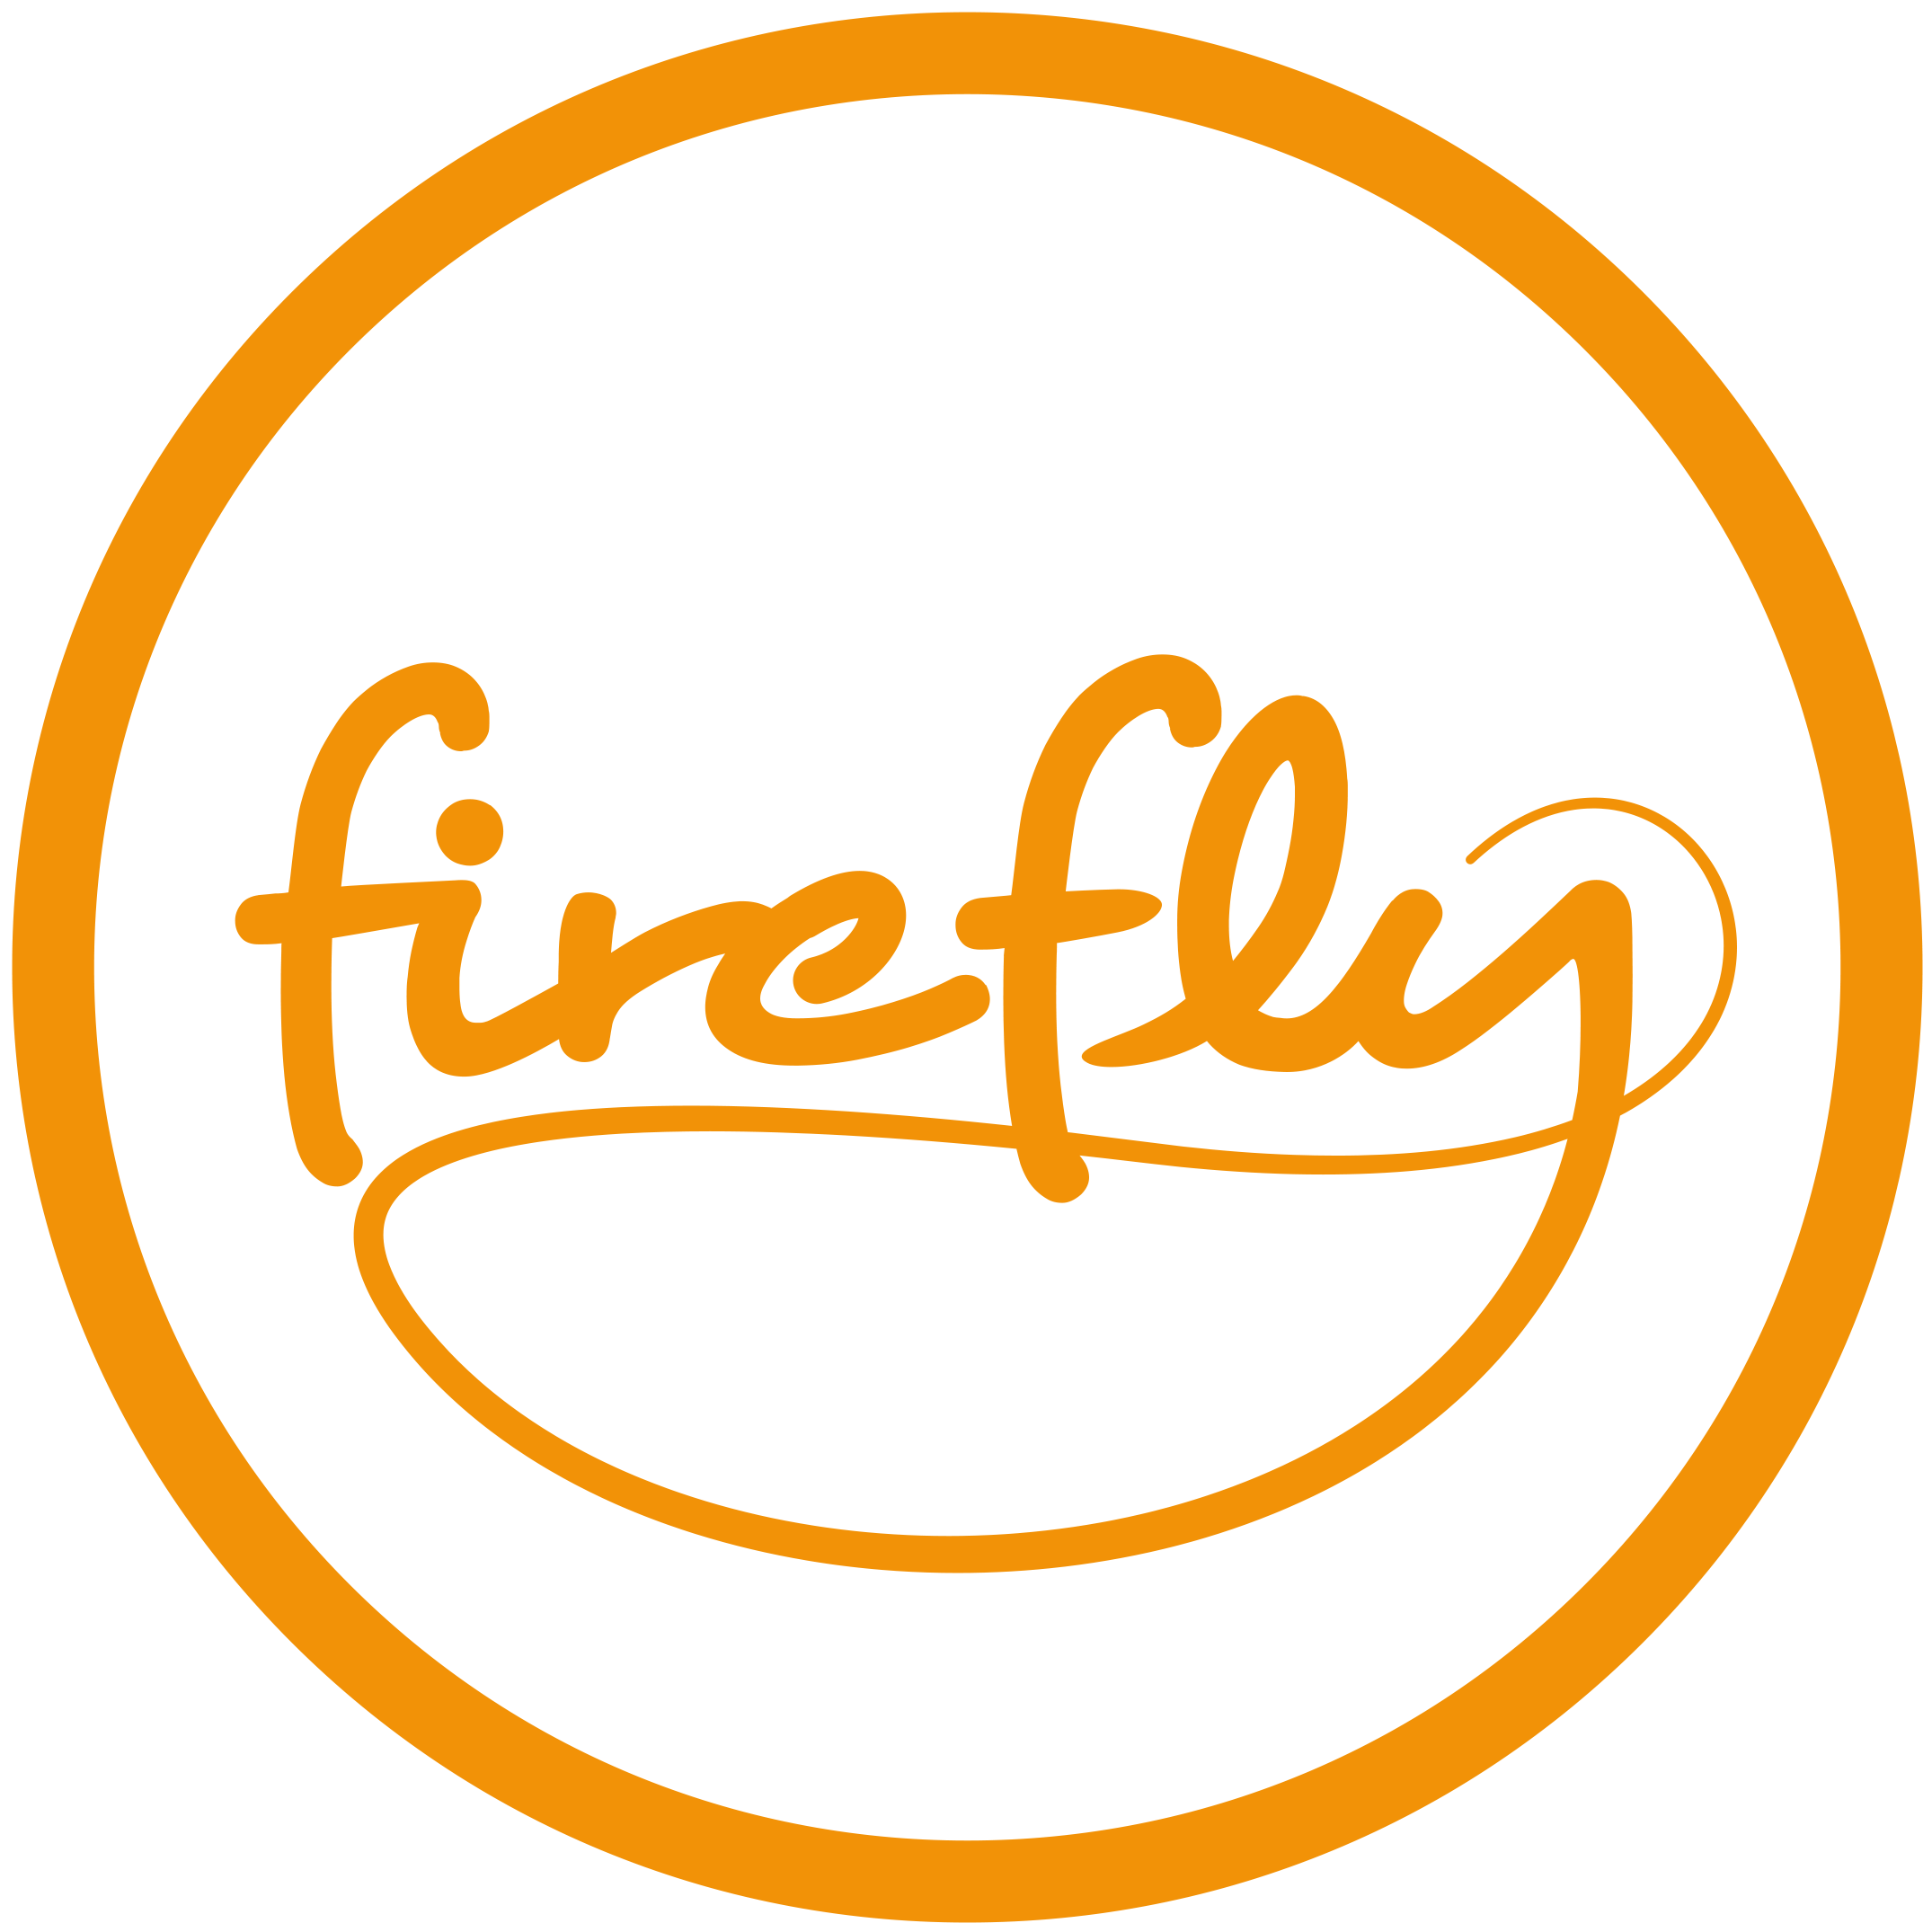 Firefly